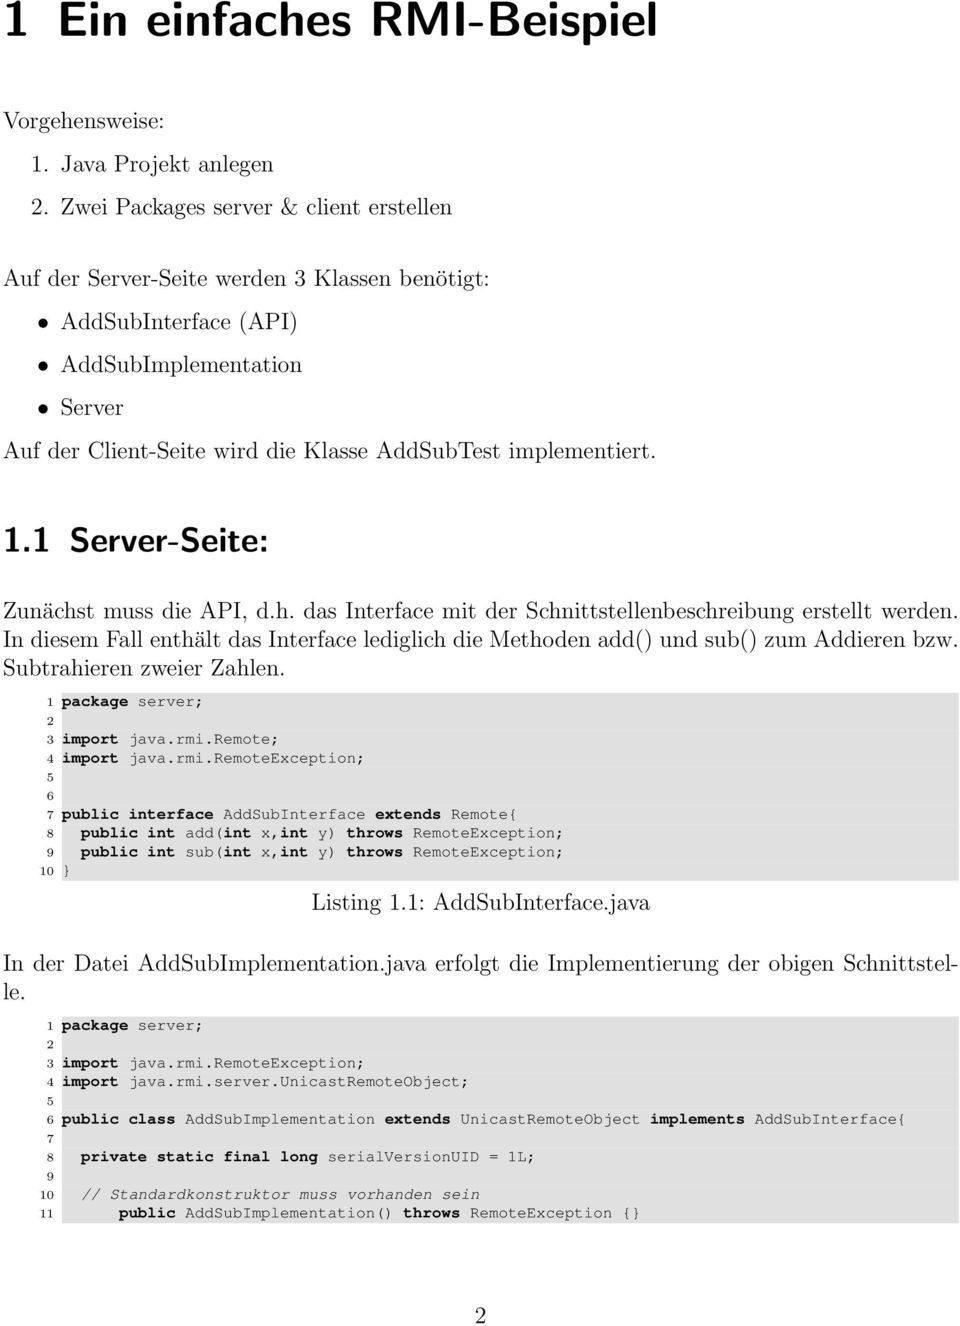 1.1 Server-Seite: Zunächst muss die API, d.h. das Interface mit der Schnittstellenbeschreibung erstellt werden.